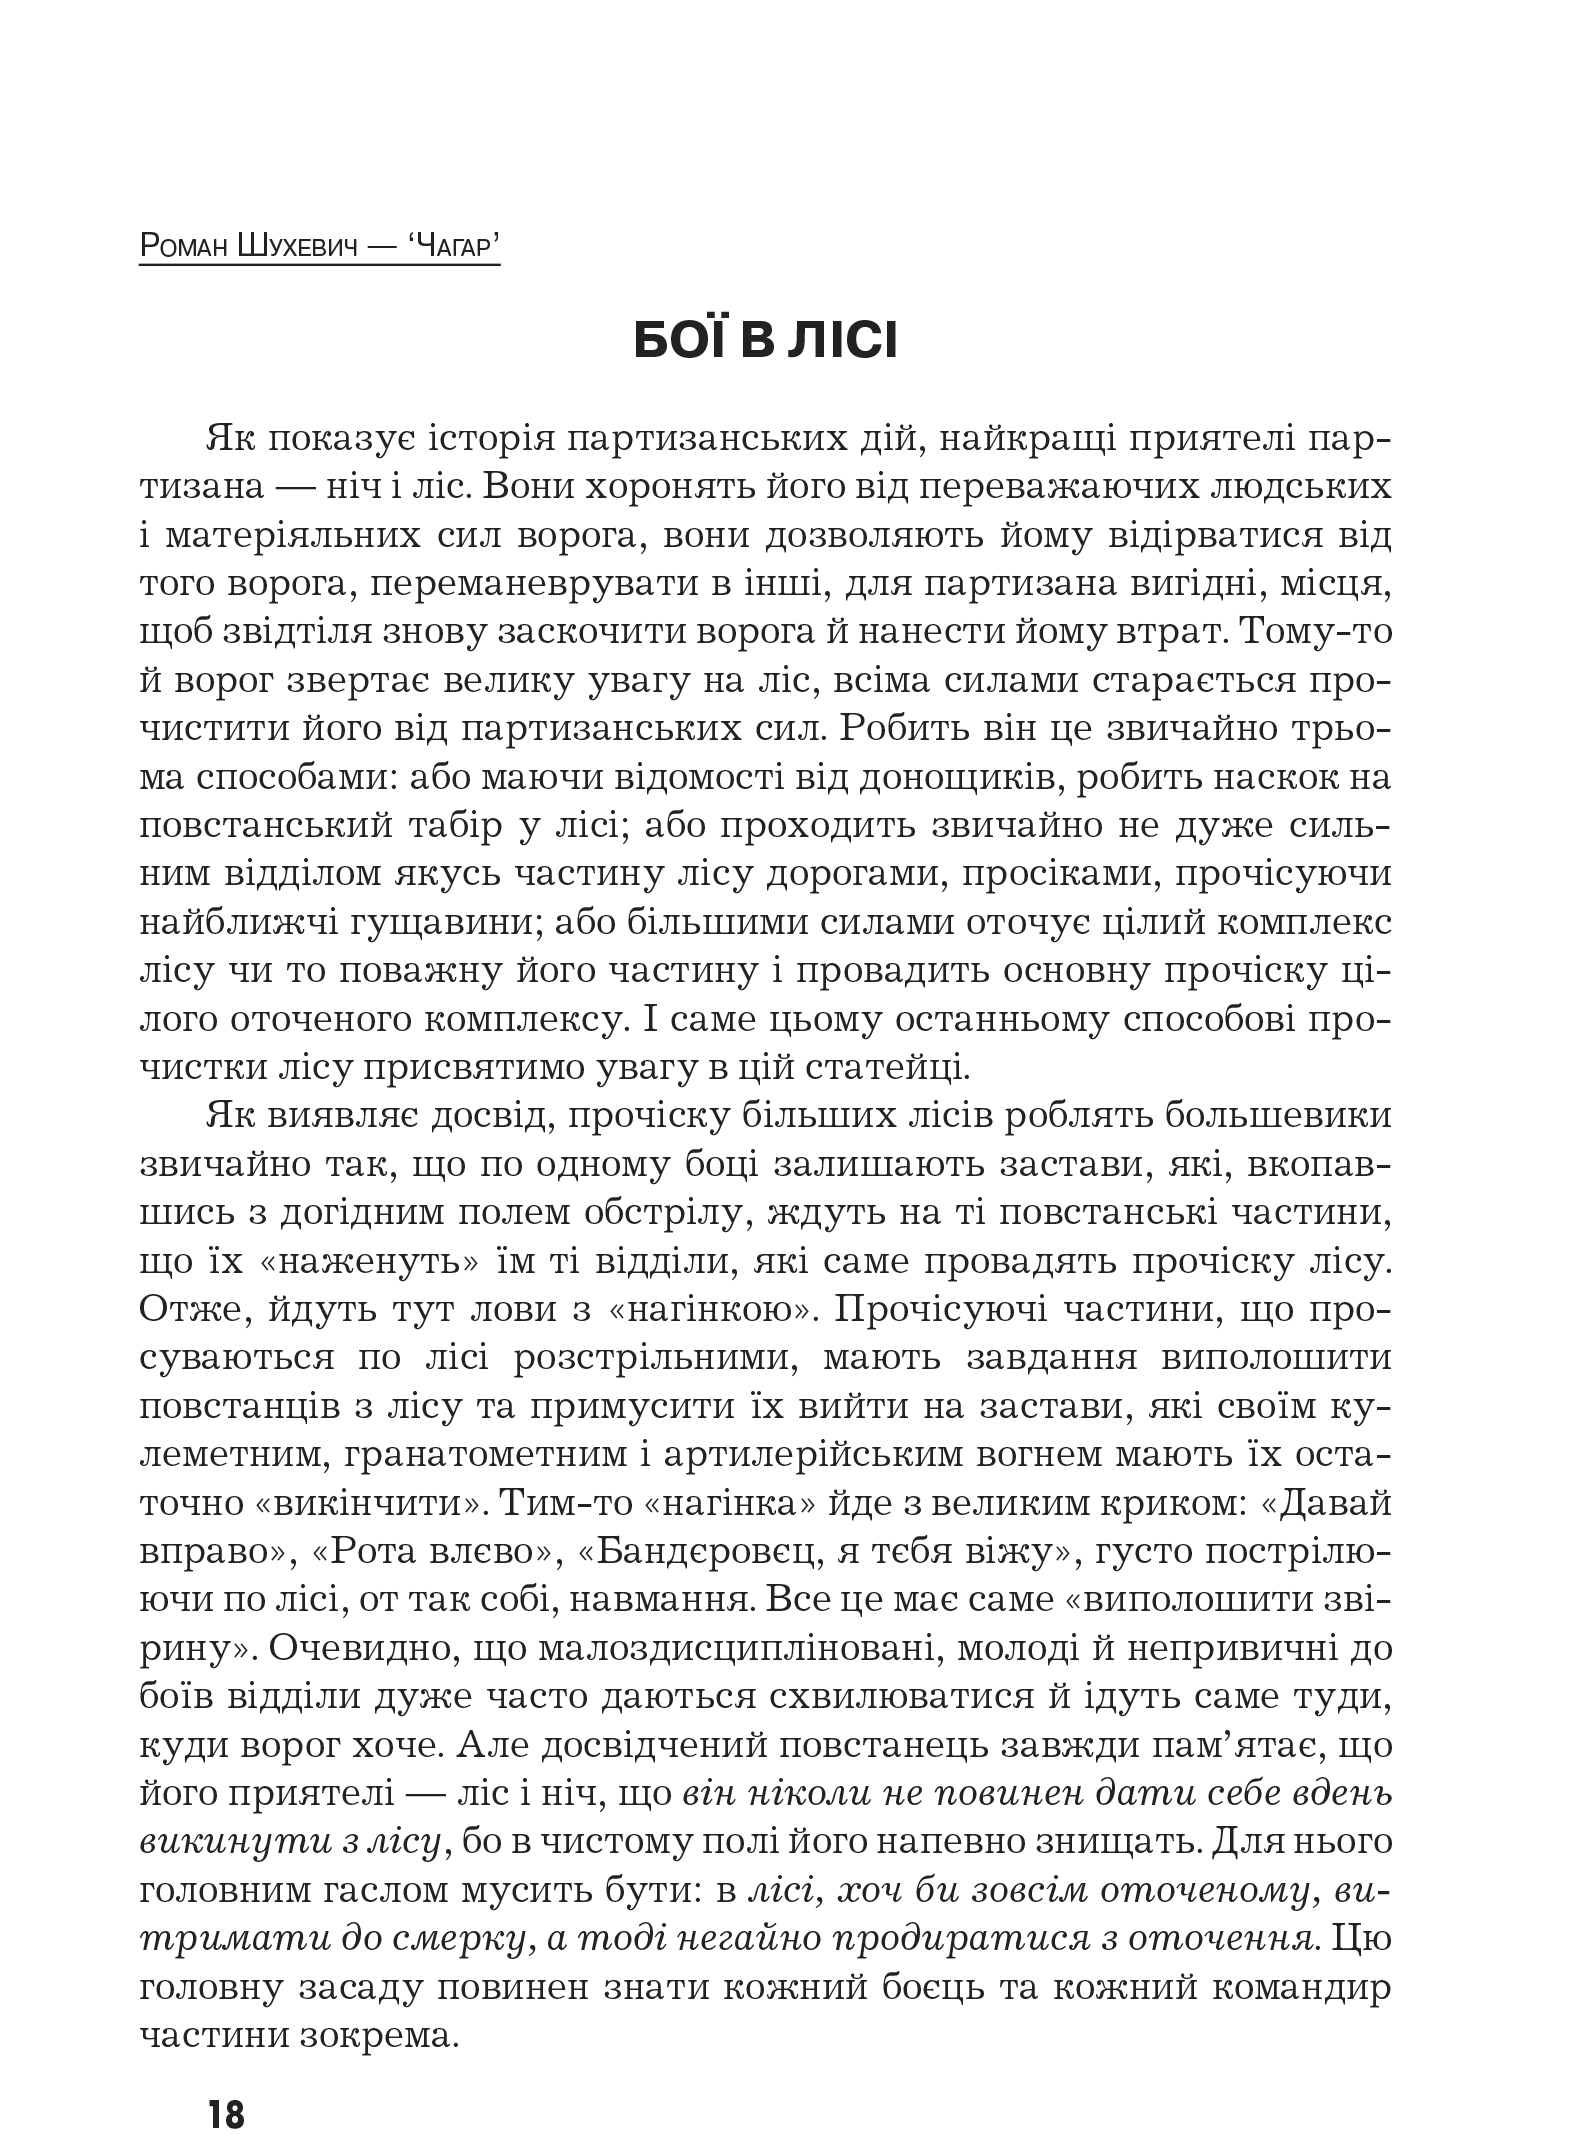 Український визвольний рух №10, ст. 18 - 20